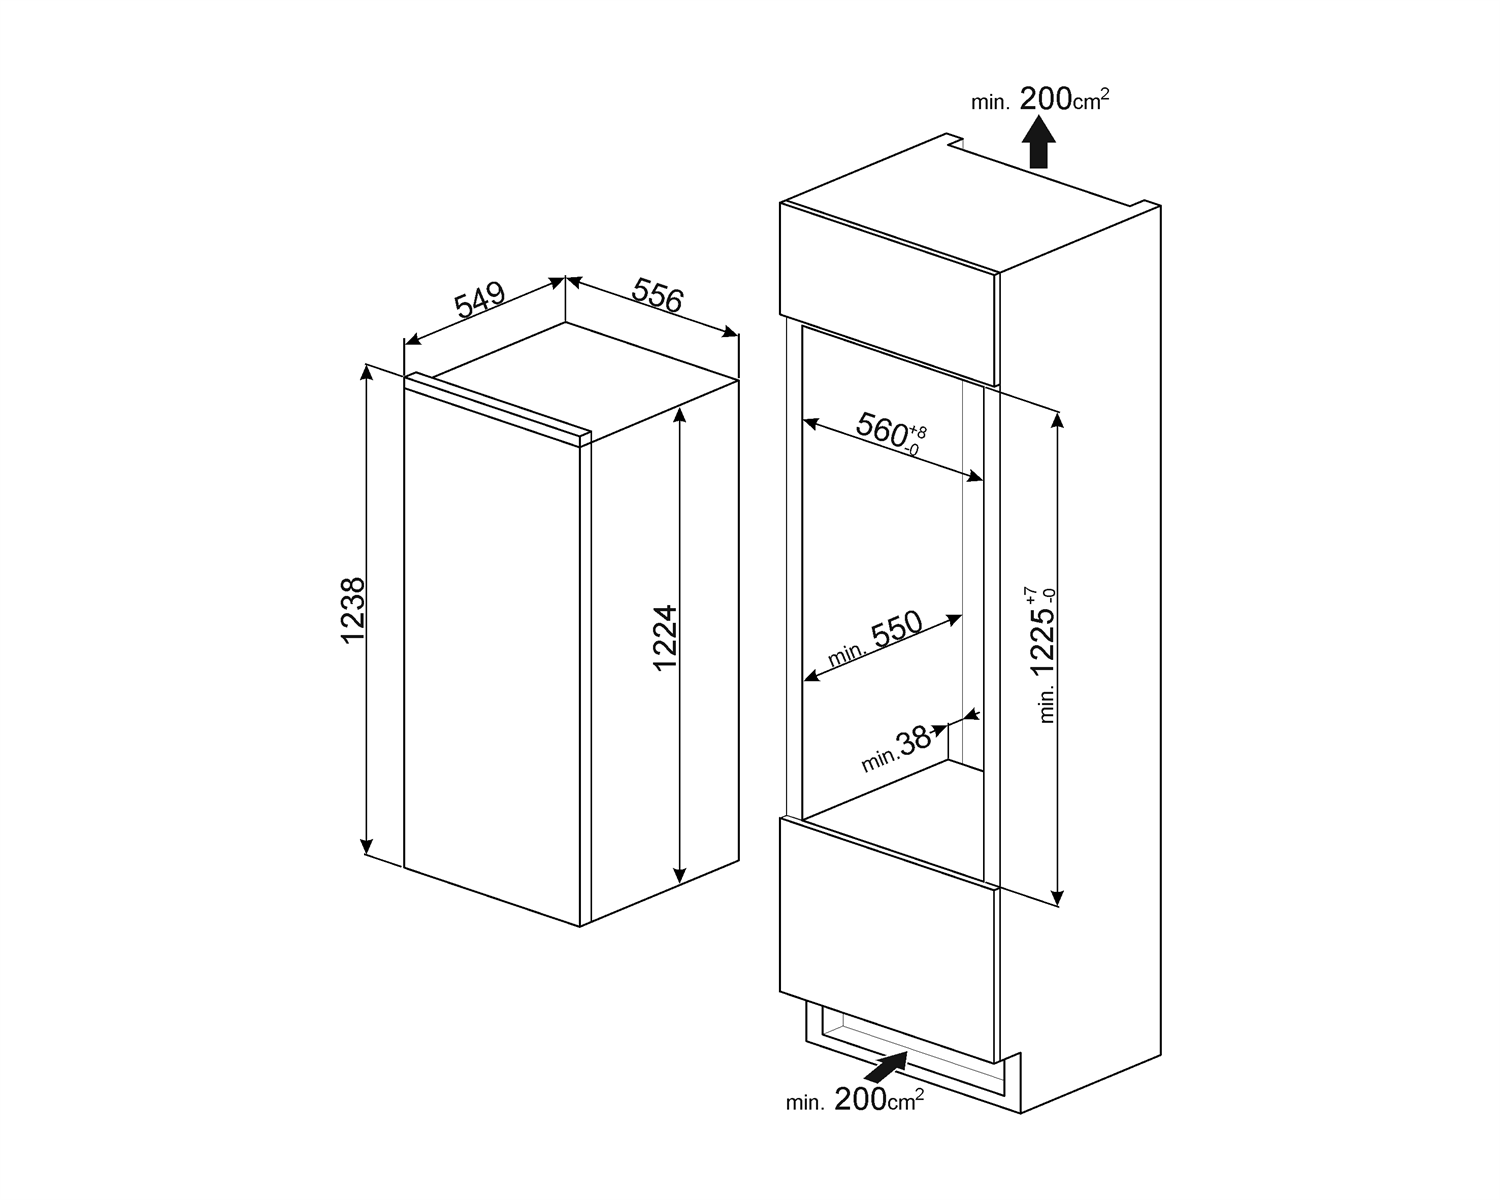 Maattekening SMEG koelkast inbouw SD7185CSD2P1